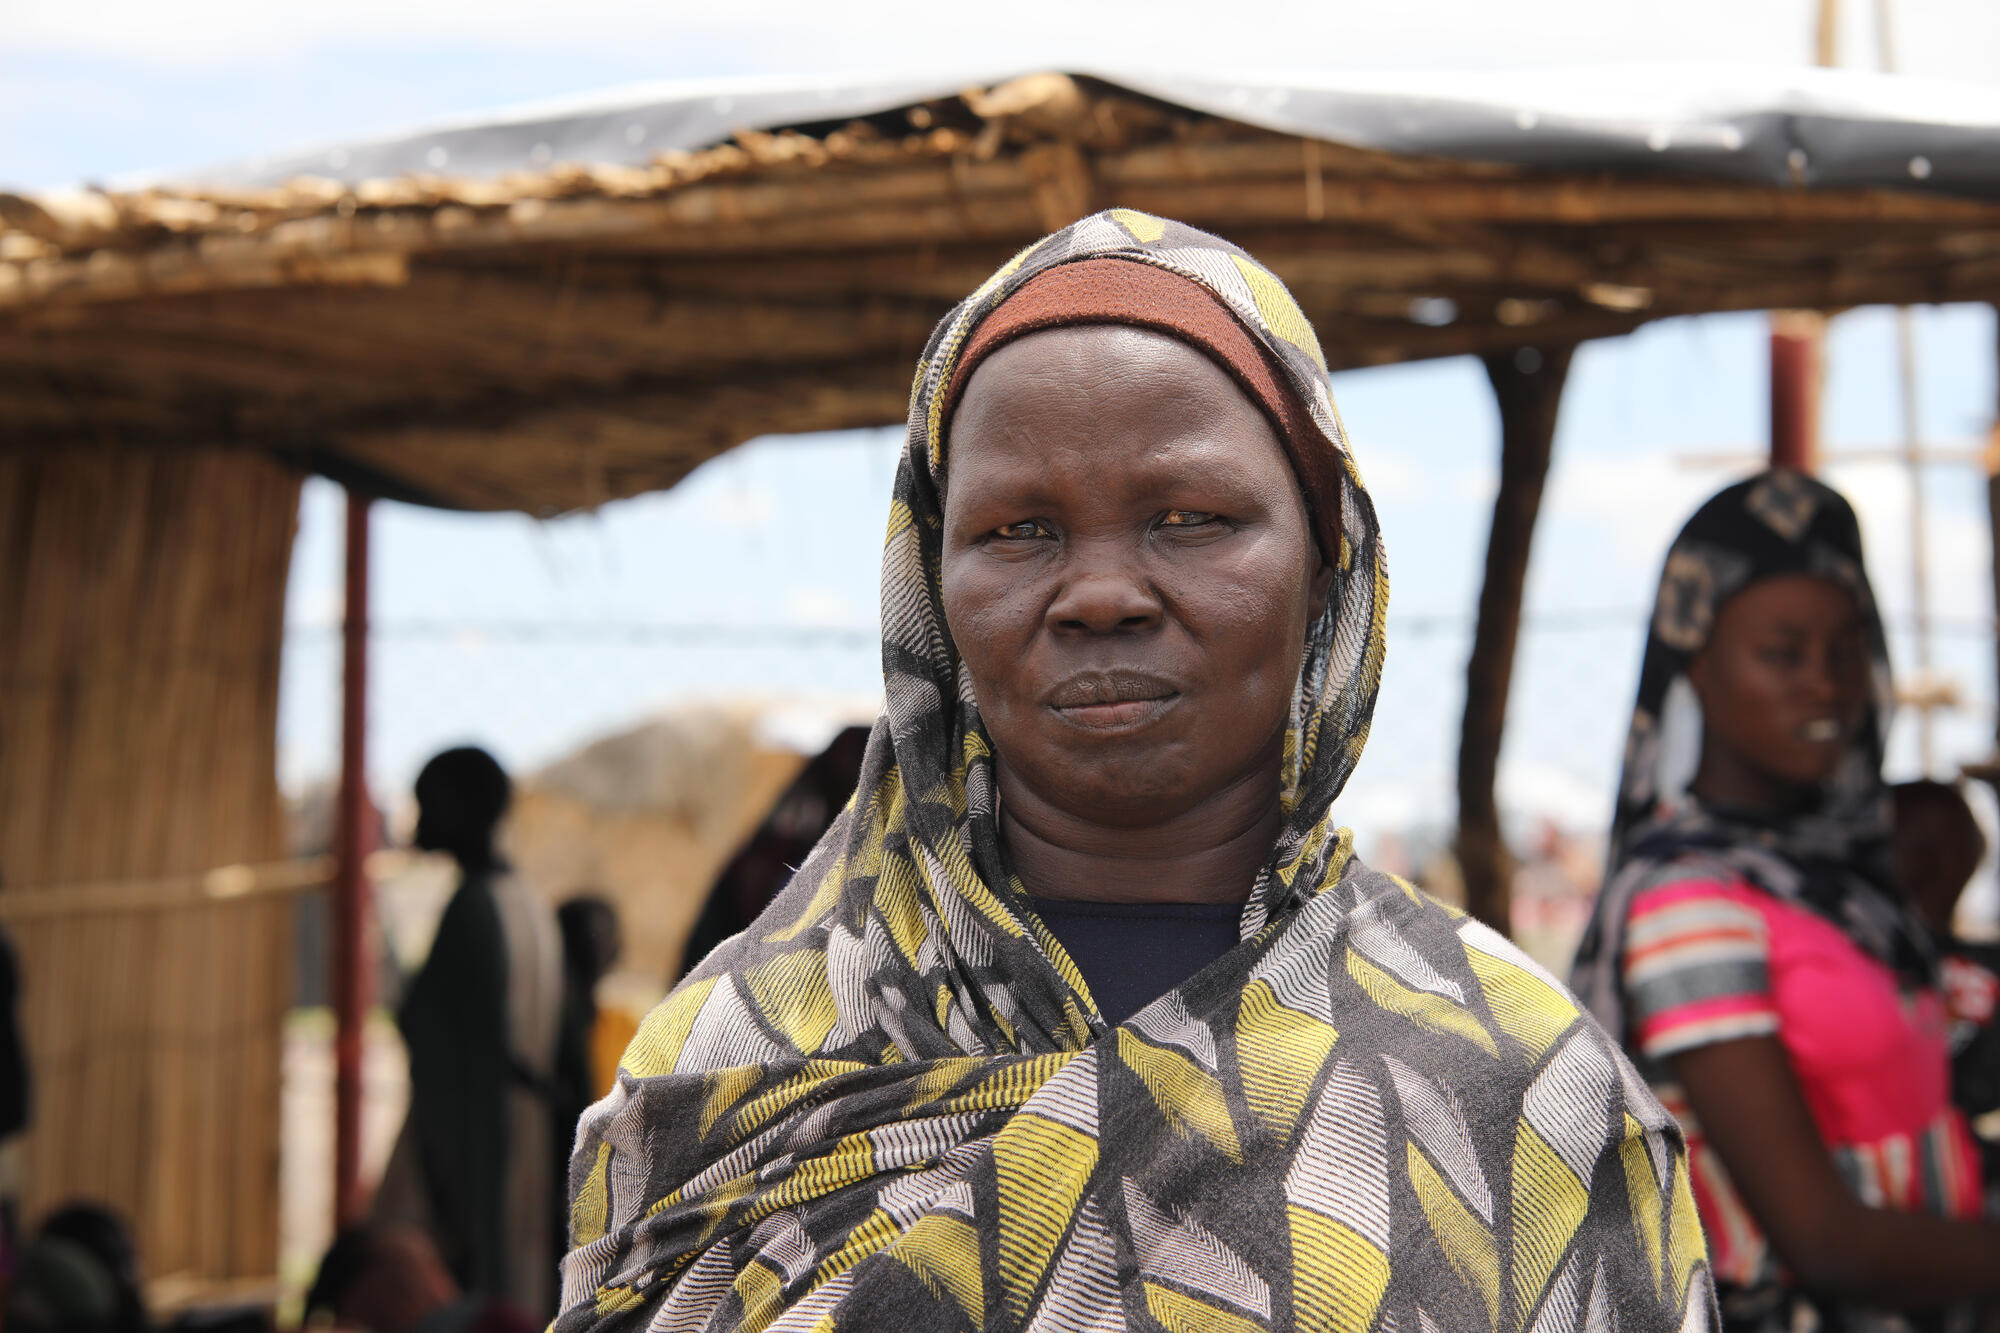 اطباء بلا حدود: نتأهب لتفشي الامراض في معابر اللاجئين والعائدين في جنوب السودان